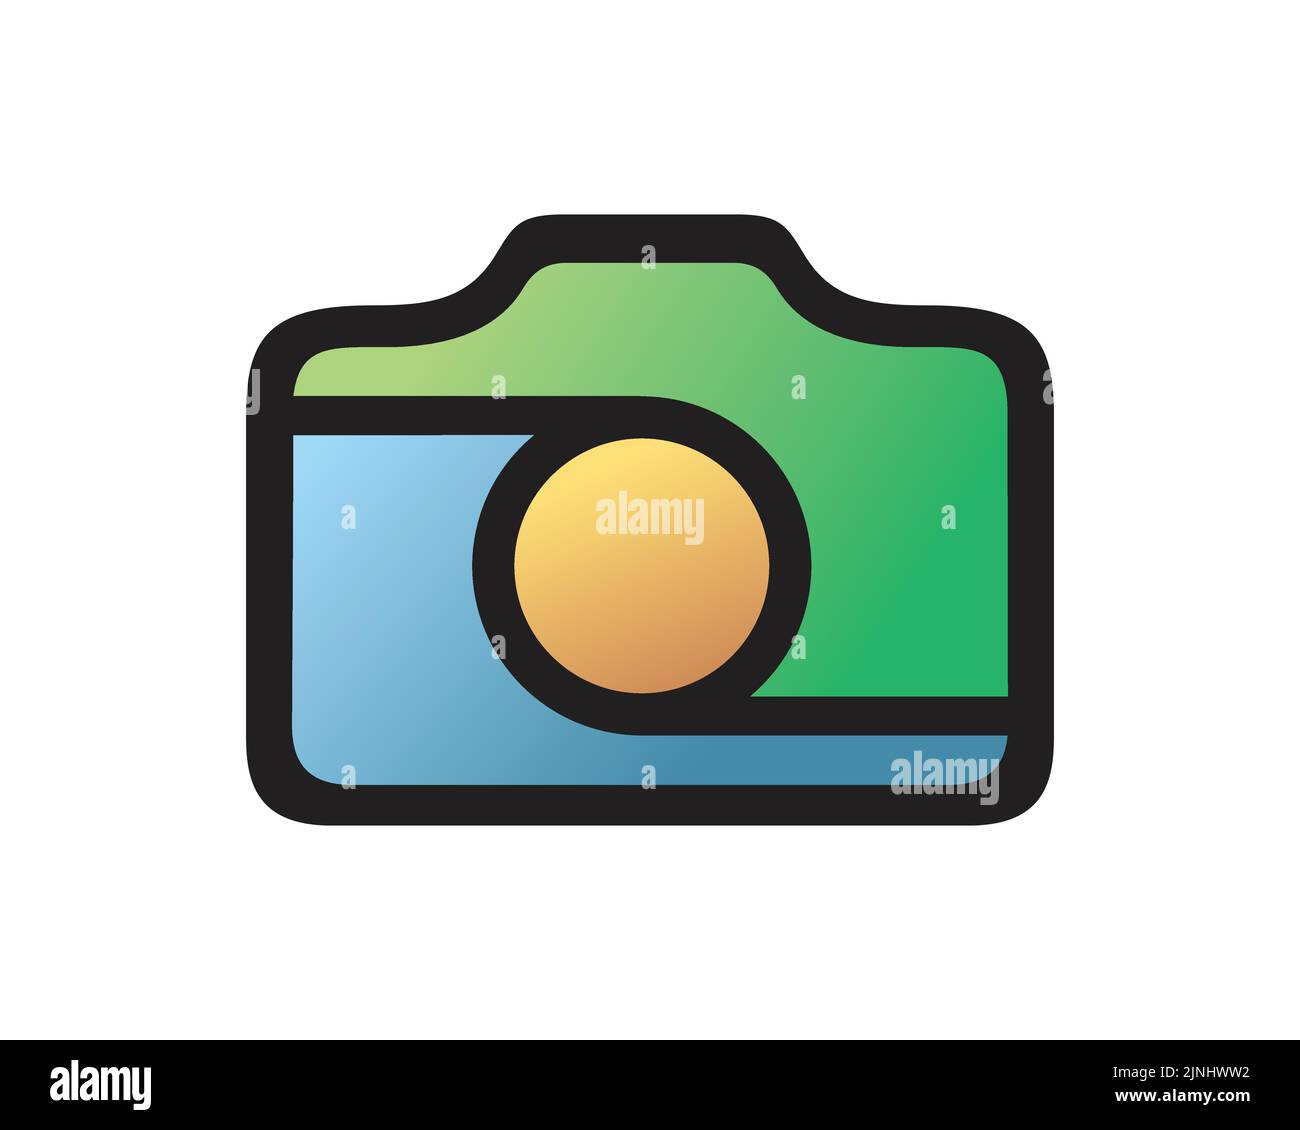 Einfache und kreative Kamera- und Fotografie-Illustrationvisualisiert mit Blau, Gelb gemischt mit grüner Farbe und einfacher Illustration Stock Vektor